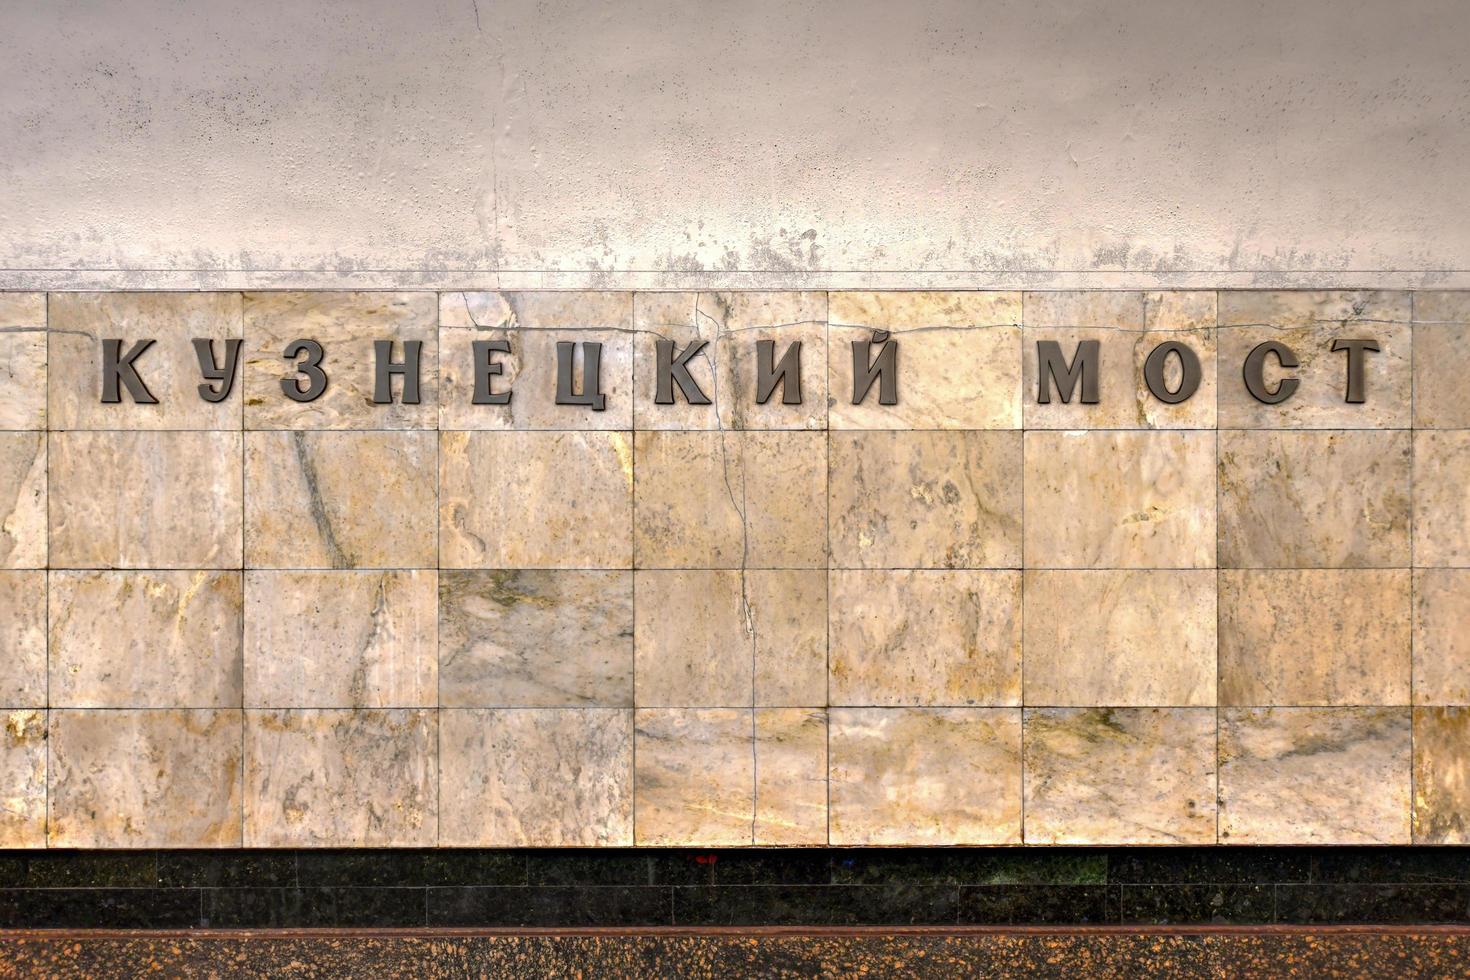 moscou, russie - 25 juillet 2019 - station de métro kuznetsky most dans le métro de moscou. photo